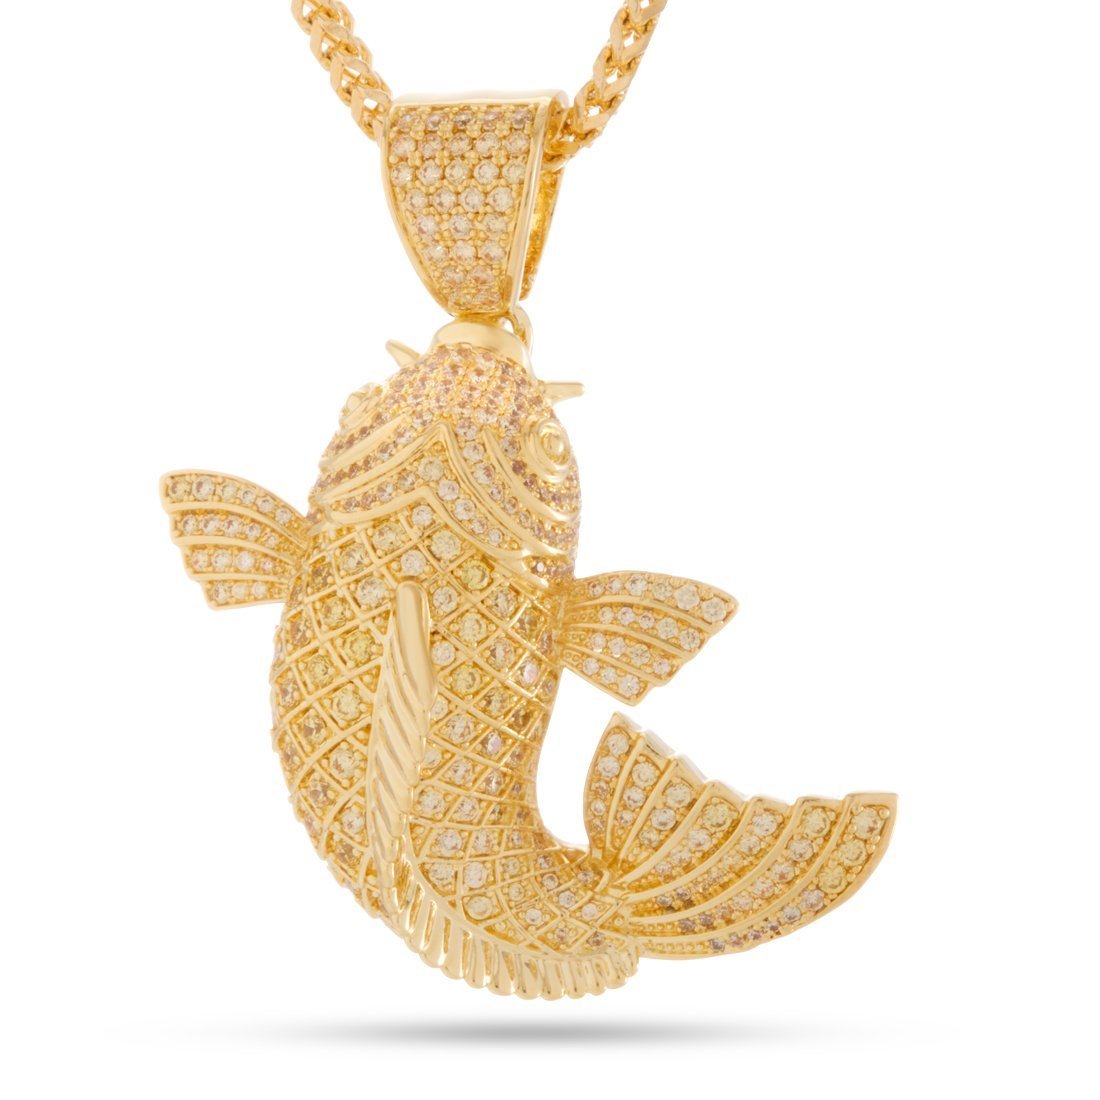 The Yamabuki Ogon Koi Fish Necklace | Necklaces | King Ice 14K Gold